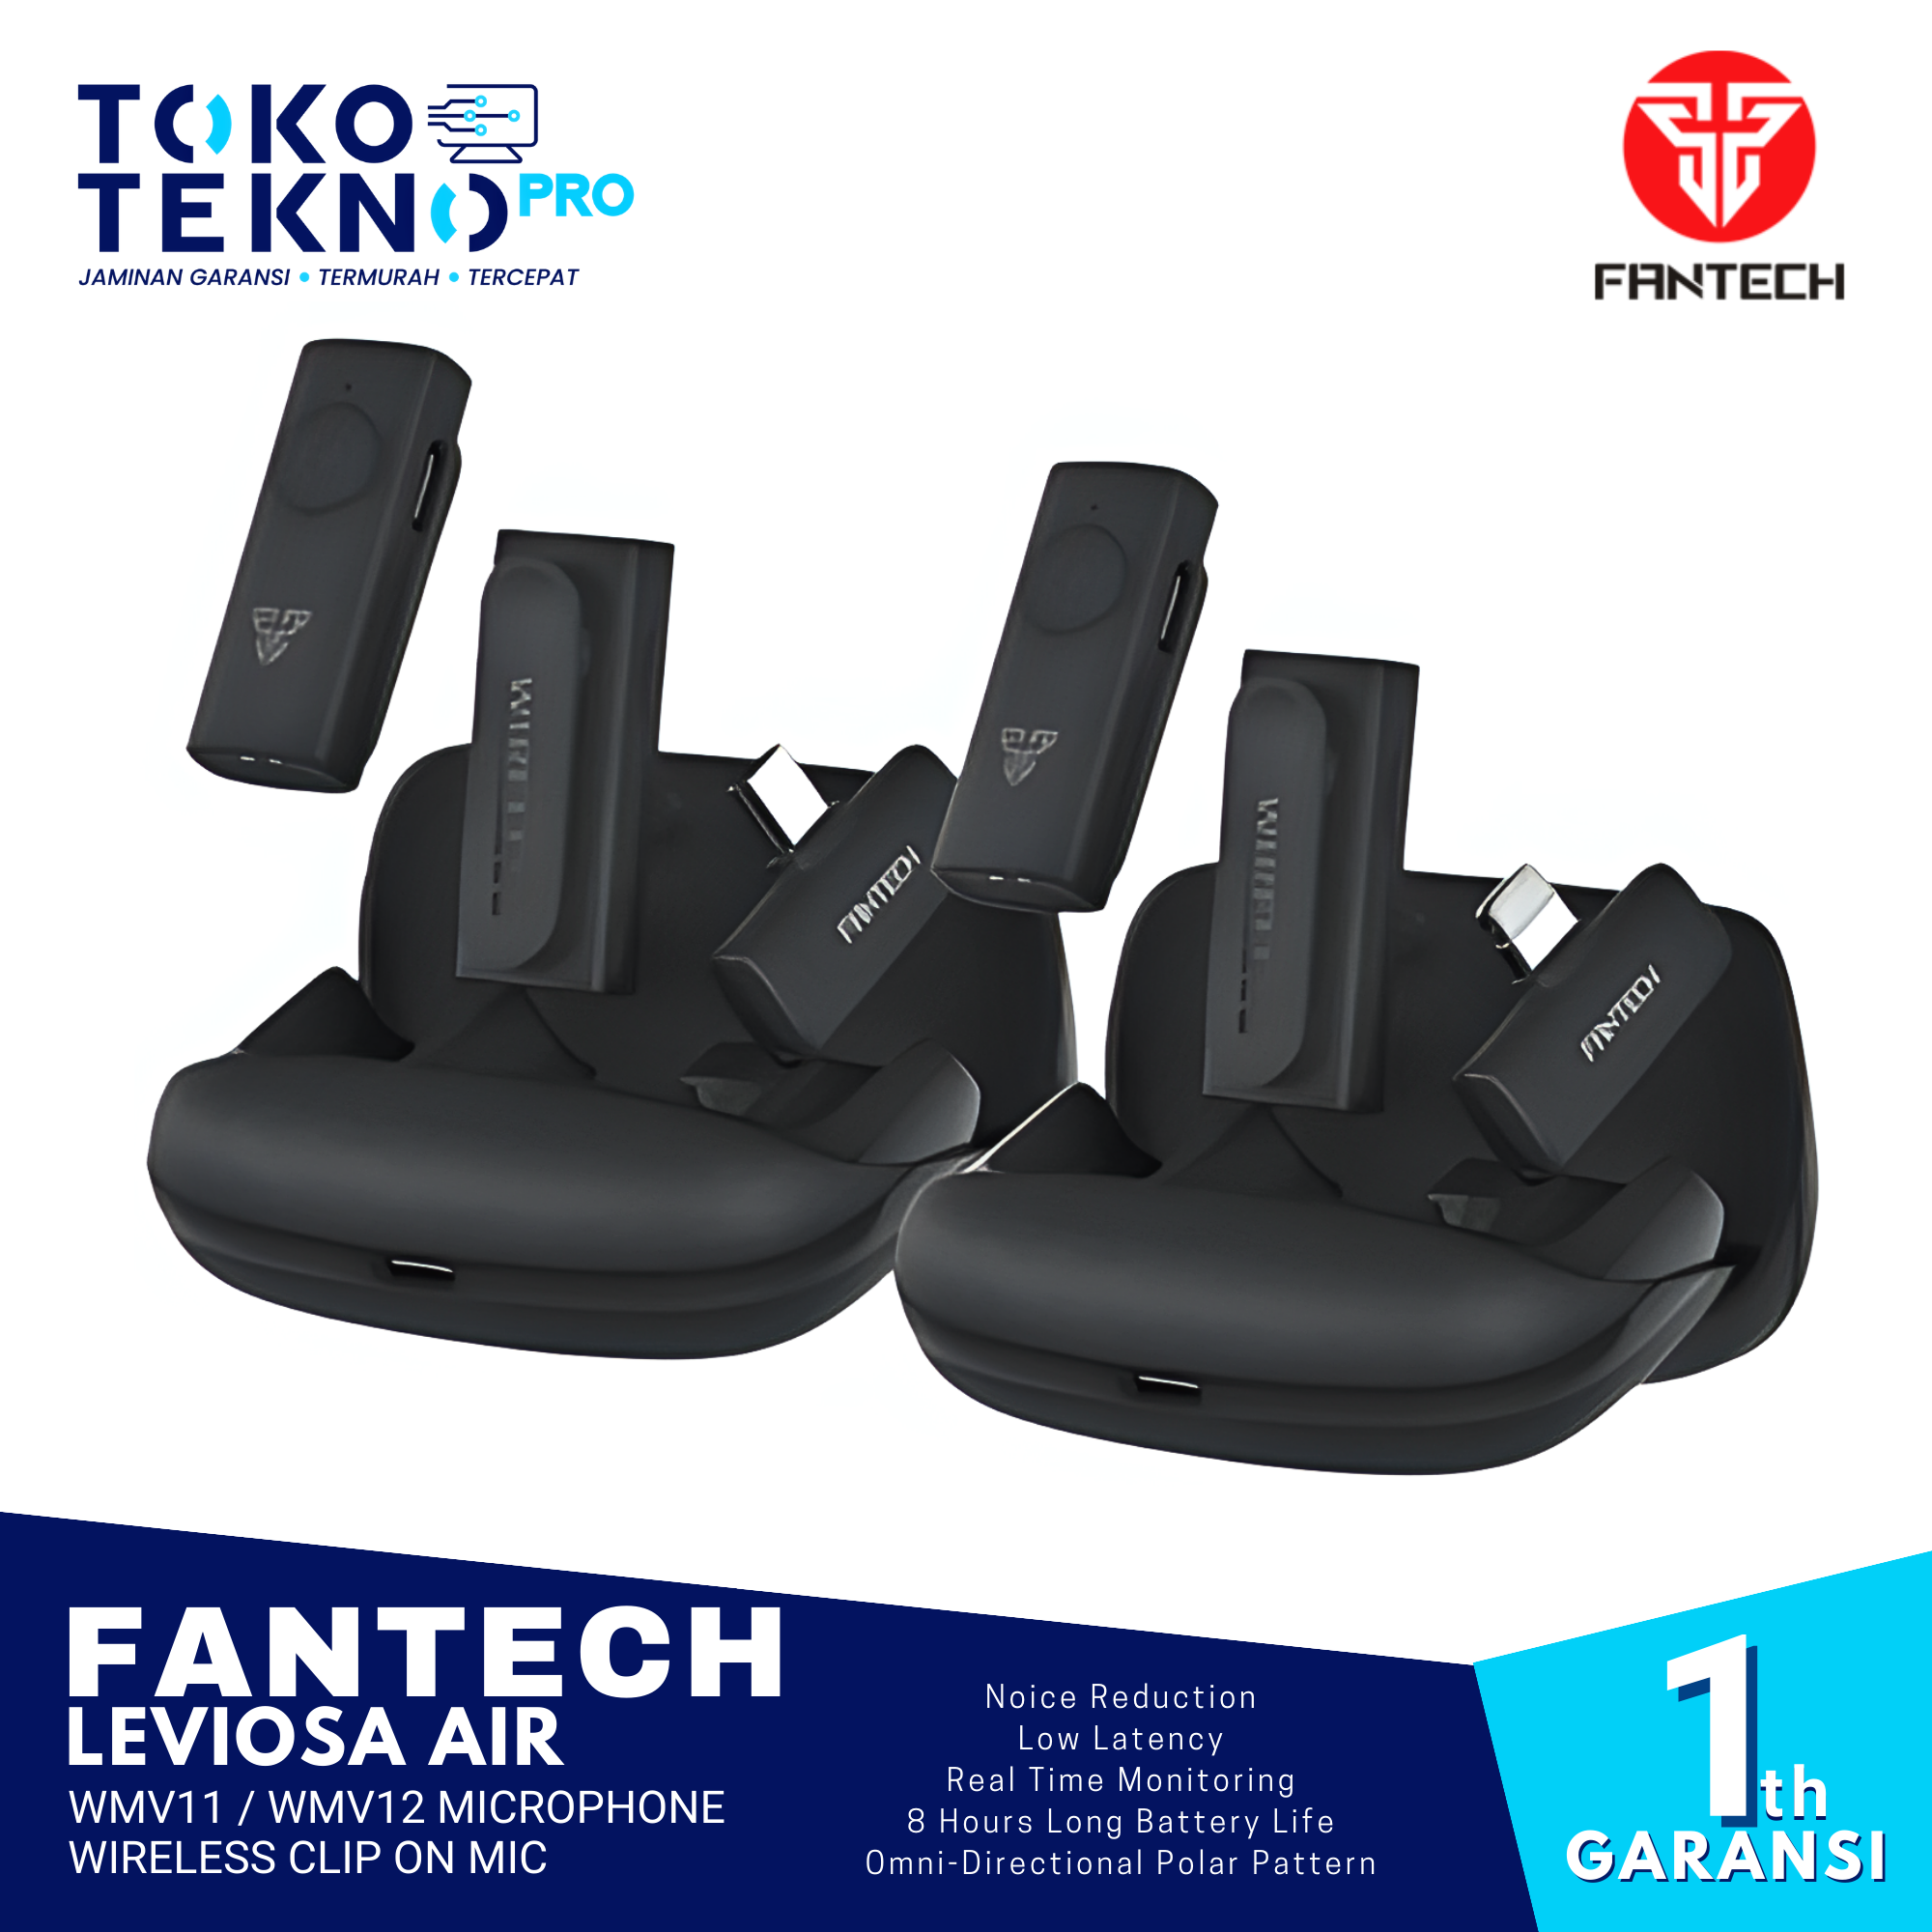 Fantech Leviosa Air WMV11 / WMV21 Microphone Wireless Clip On Mic